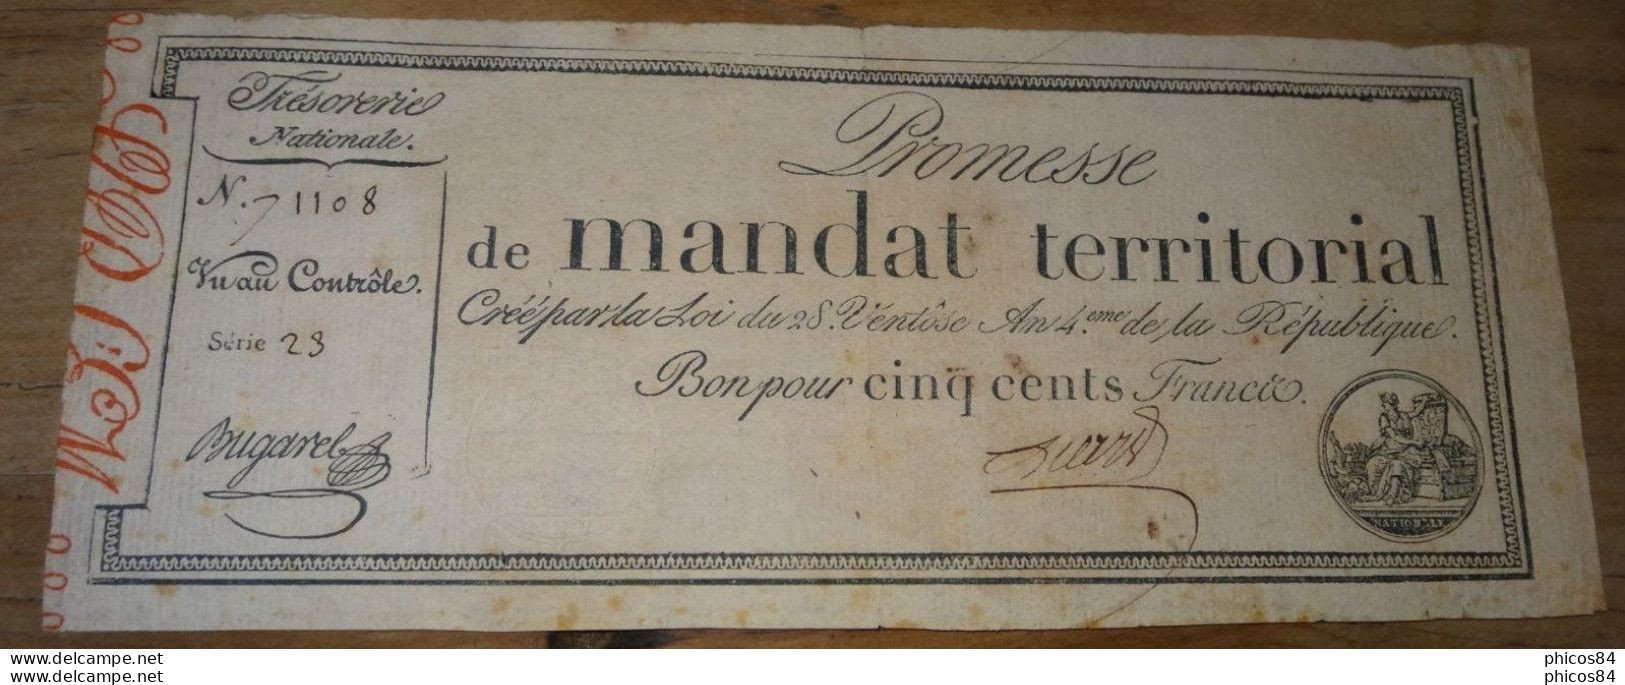 Exceptionnel Mandat Territorial 500 Francs De La Série 23 Avec Un Numéro Supérieur A 50000 - Assignats